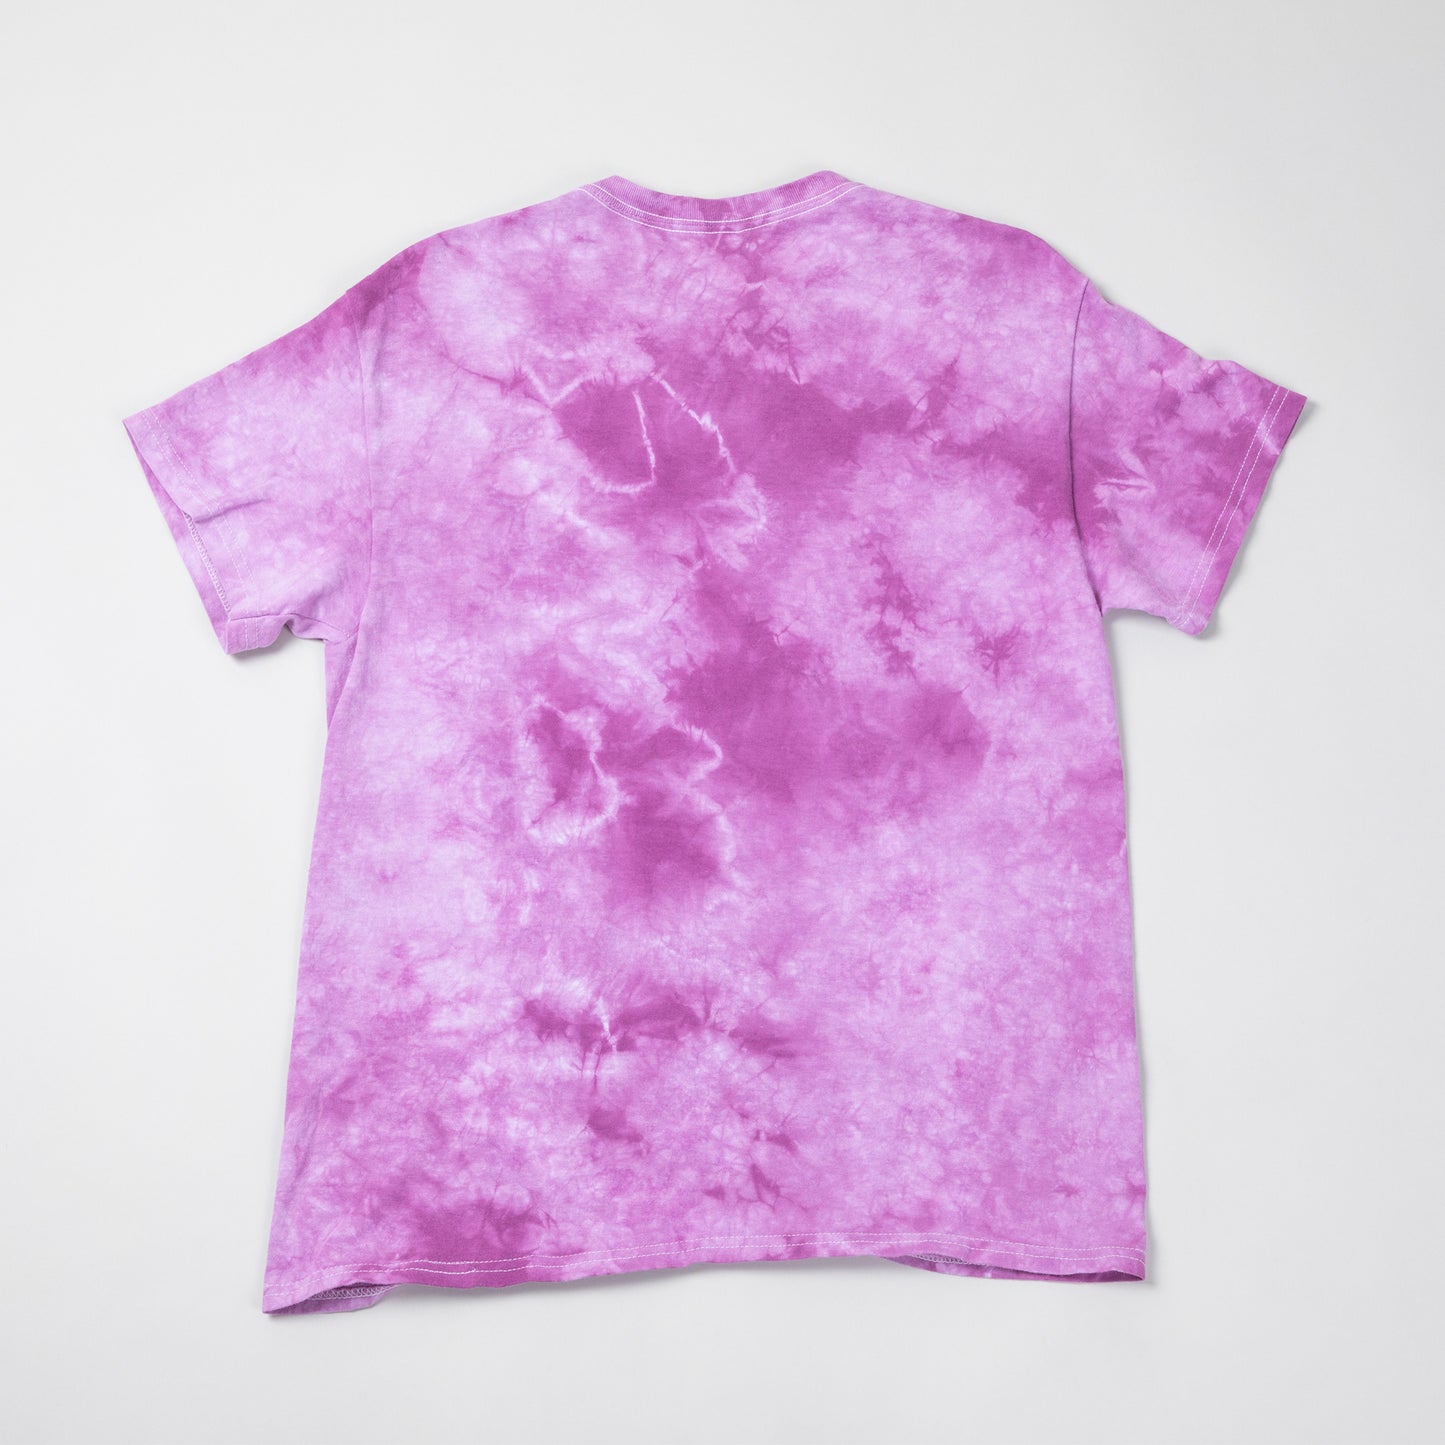 Paw Print Boysenberry Tie-Dye T-Shirt